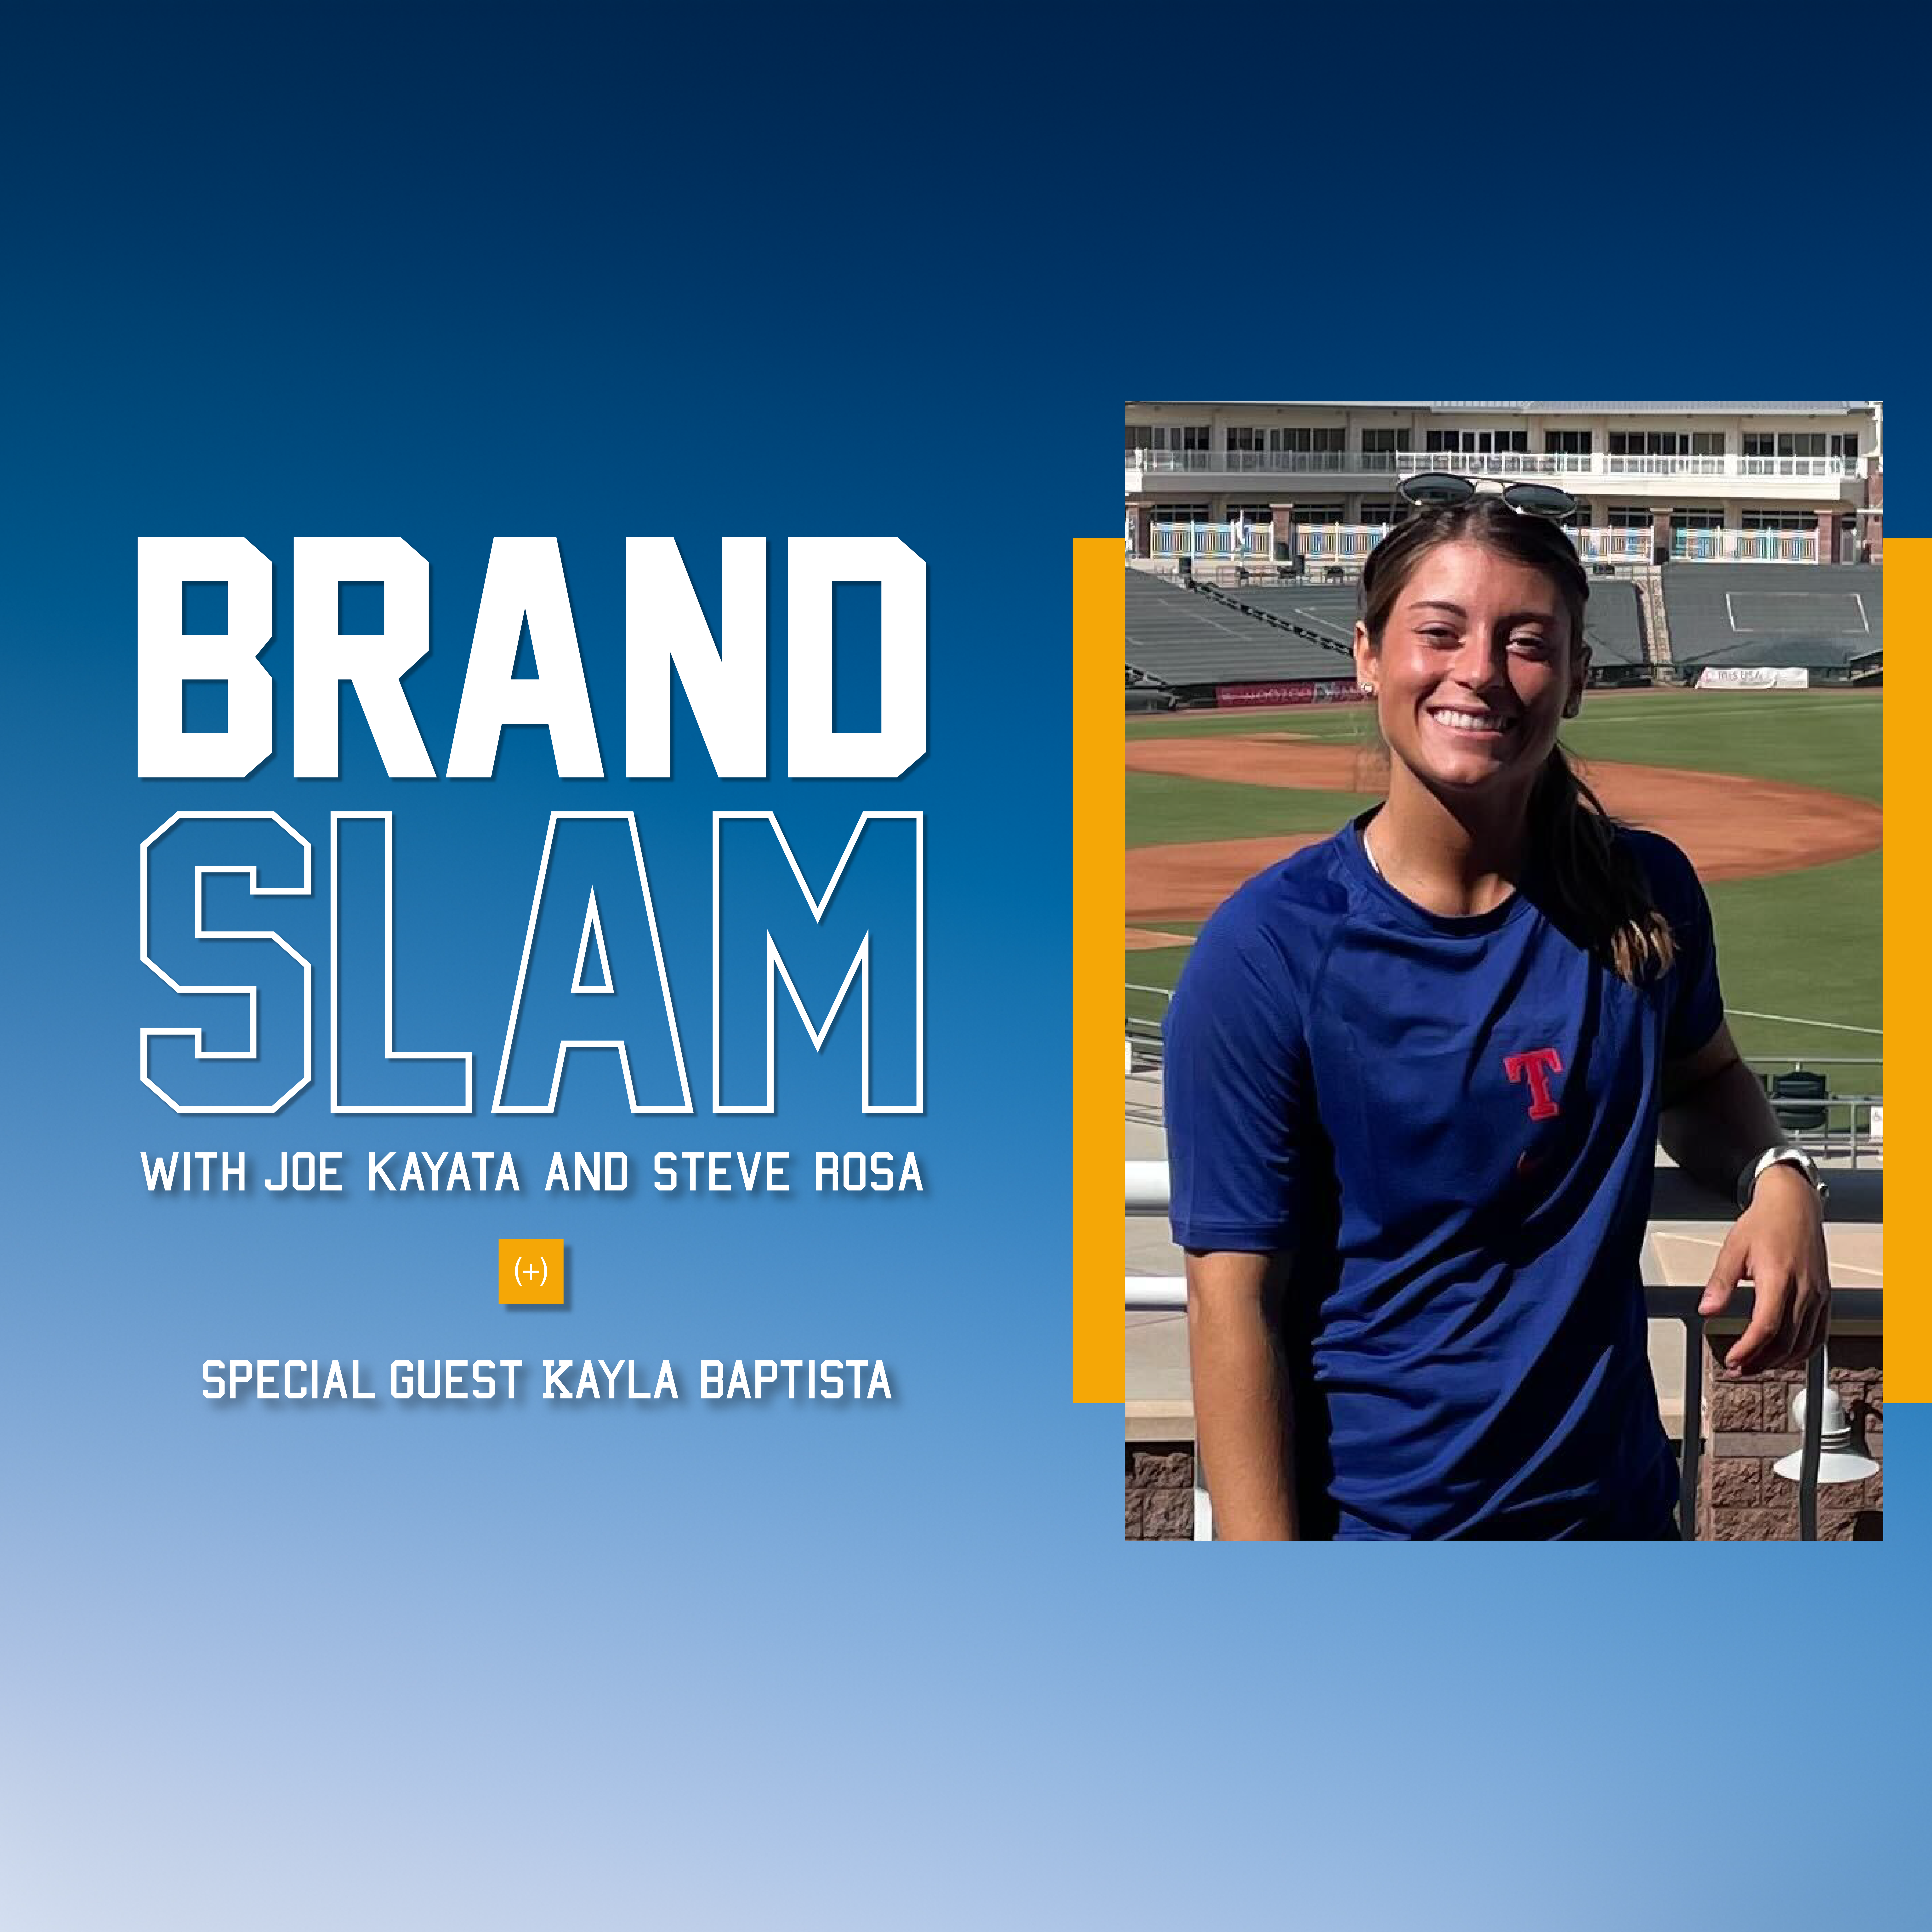 Brand Slam podcast logo and photo of Kayla Baptista.